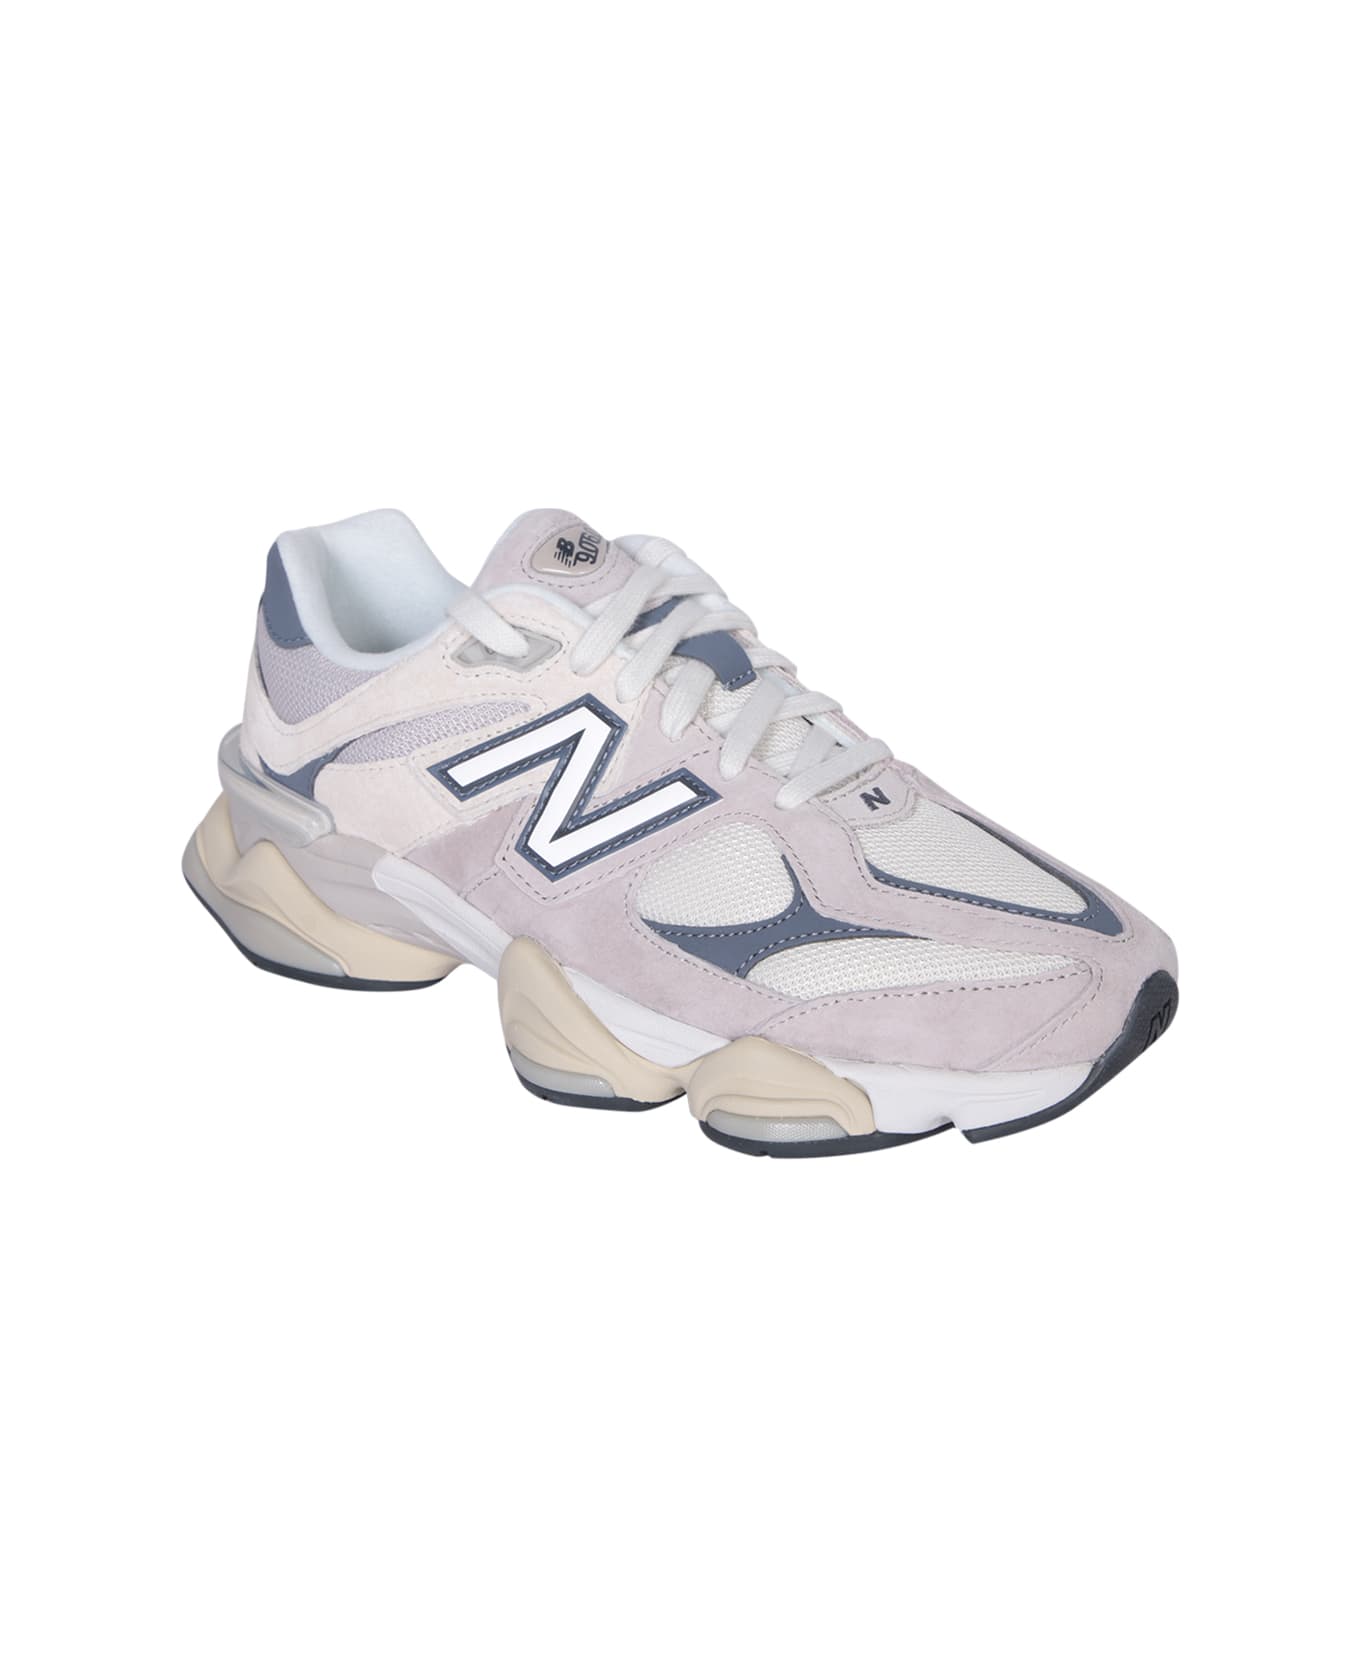 New Balance 9060 Beige Sneakers - Beige